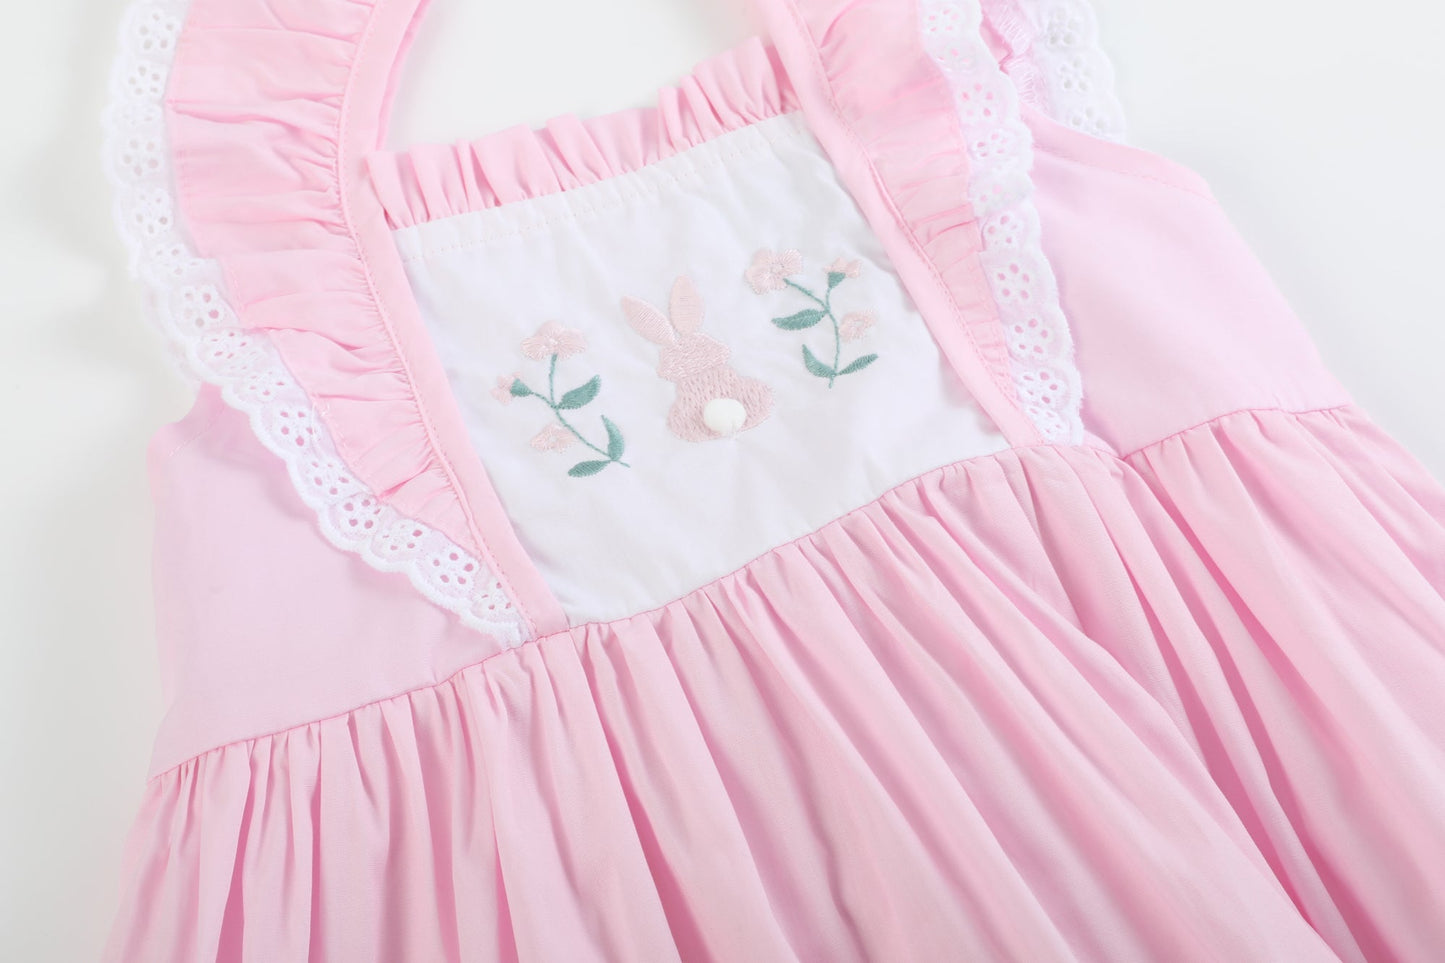 Girls’ Pink Bunny Ruffle Shoulder Dress